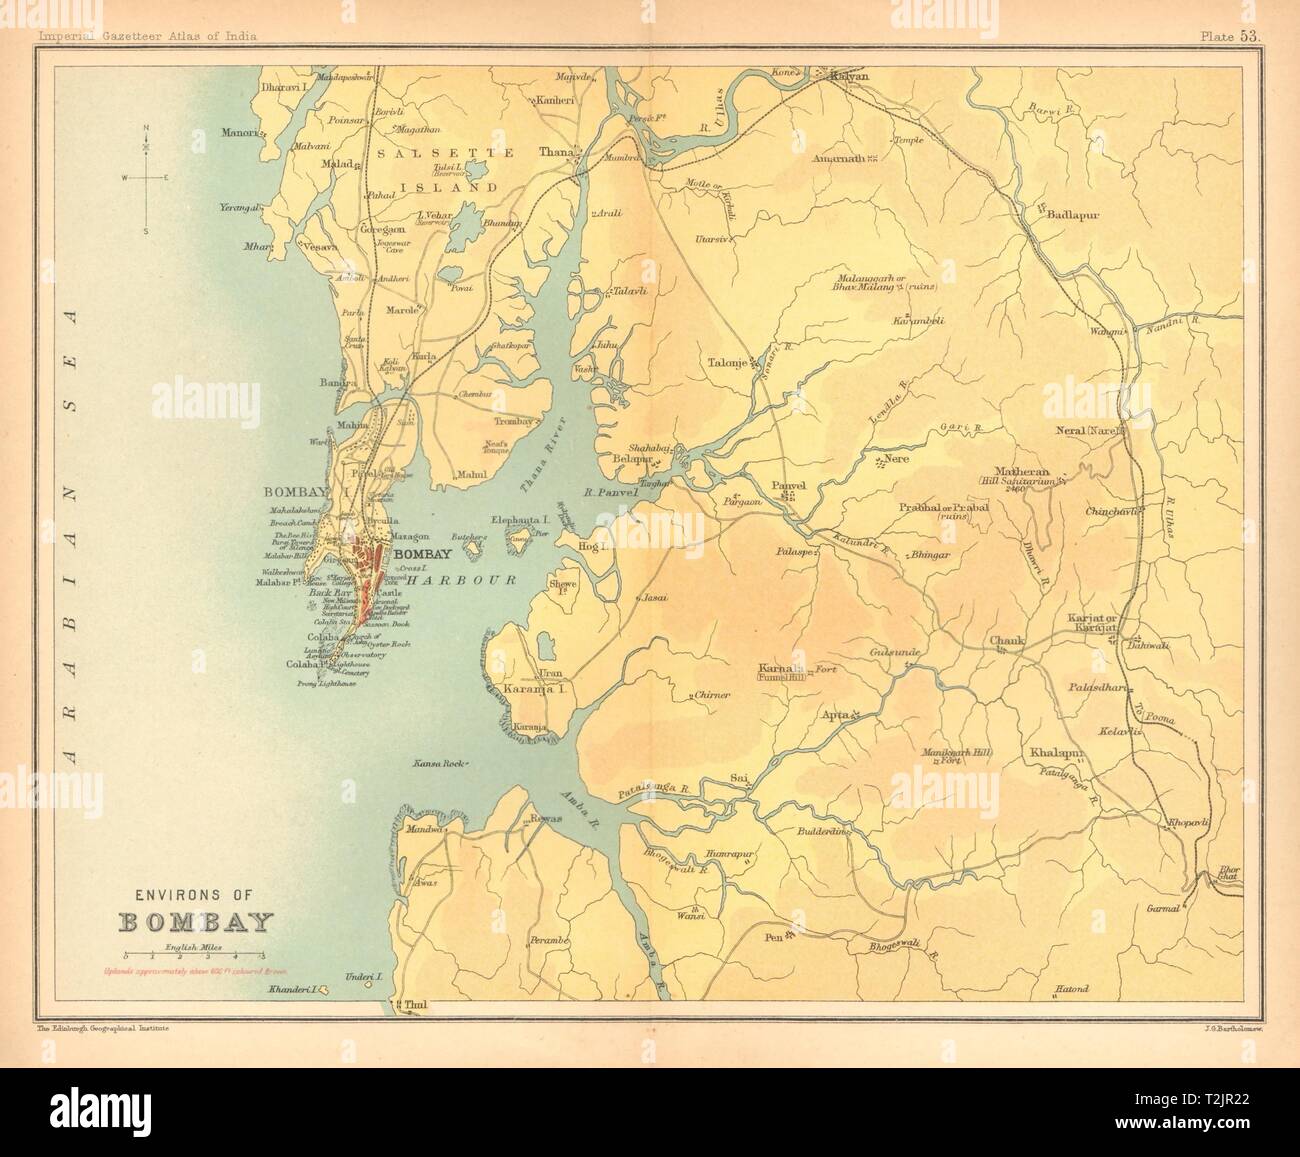 Bombay/Mumbai city & environs. L'État du Maharashtra. Salsette. L'Inde britannique 1909 map Banque D'Images